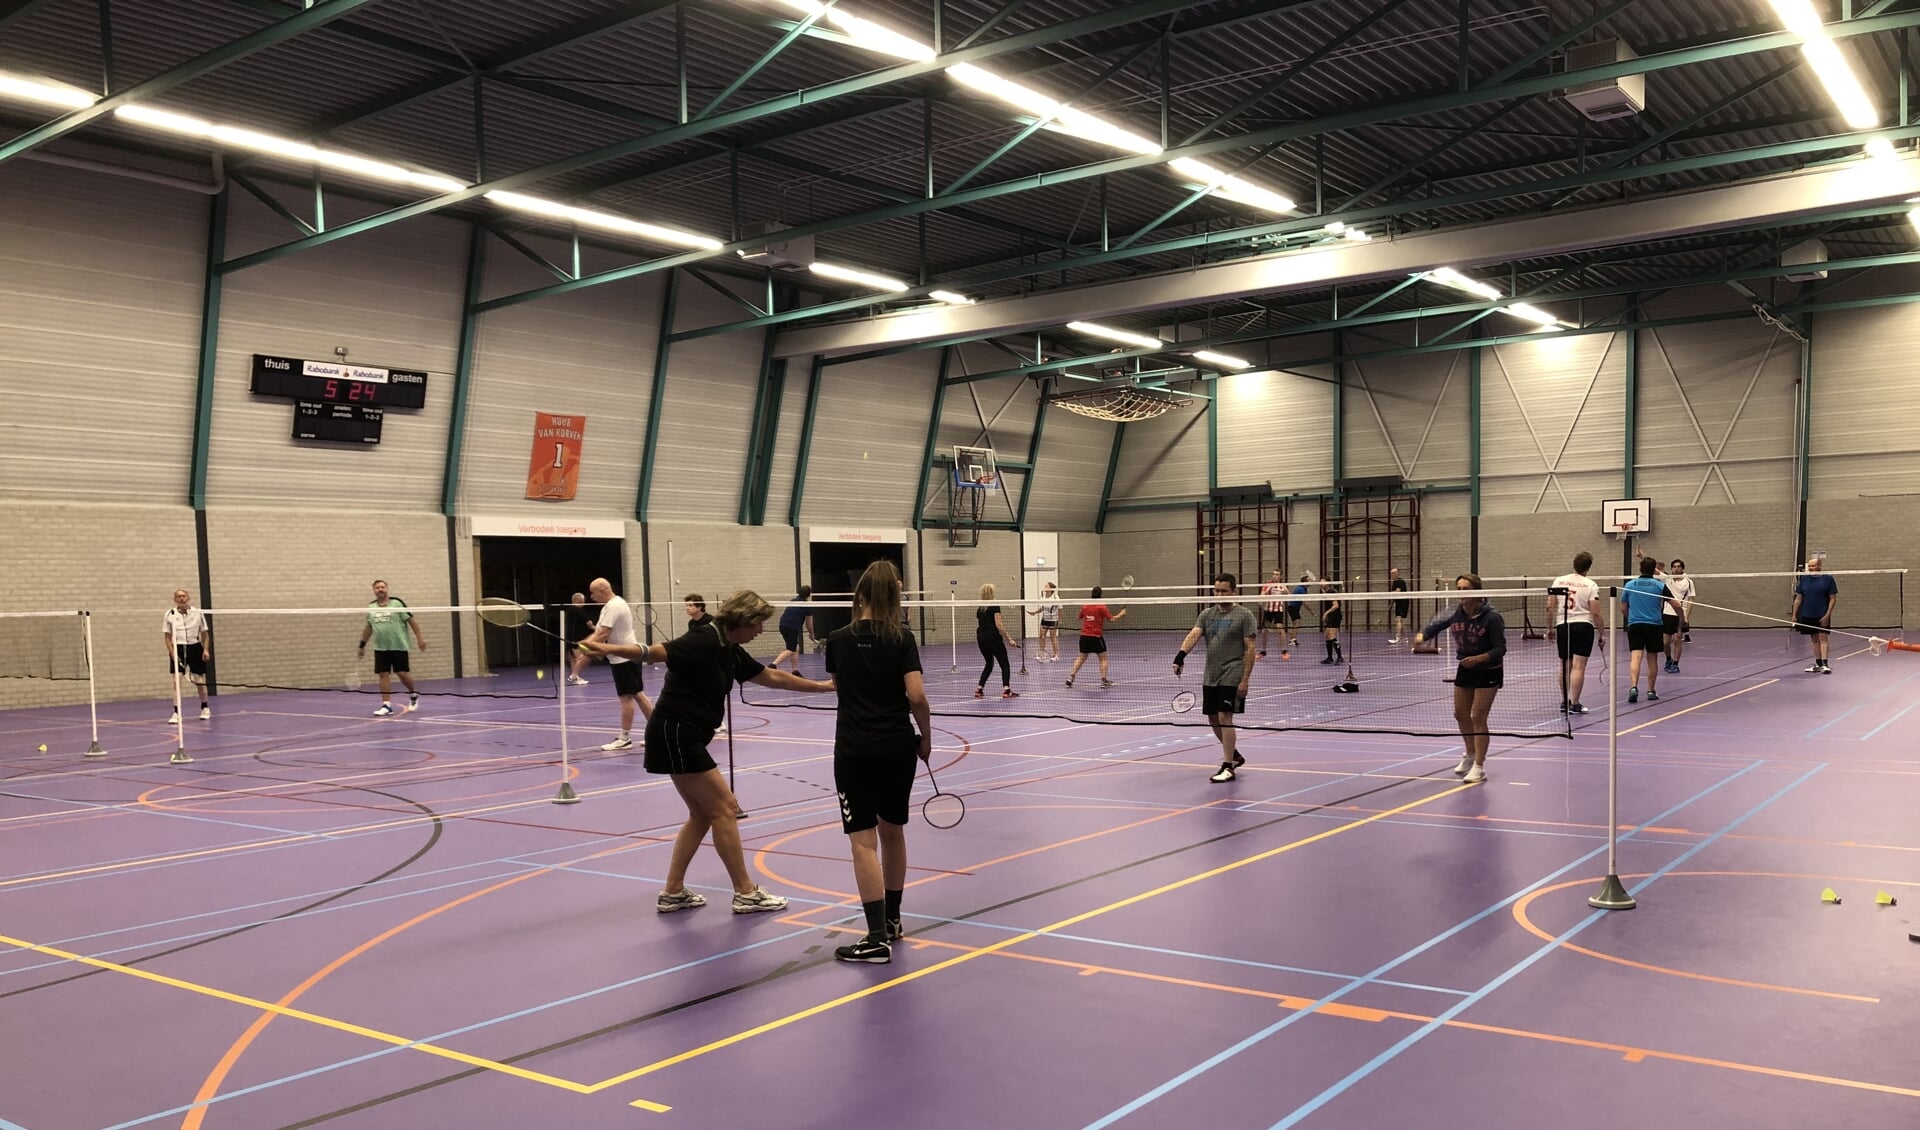 Badminton Club Lieshout is blij dat ze, ondanks diverse extra maatregelen tóch door kan blijven spelen